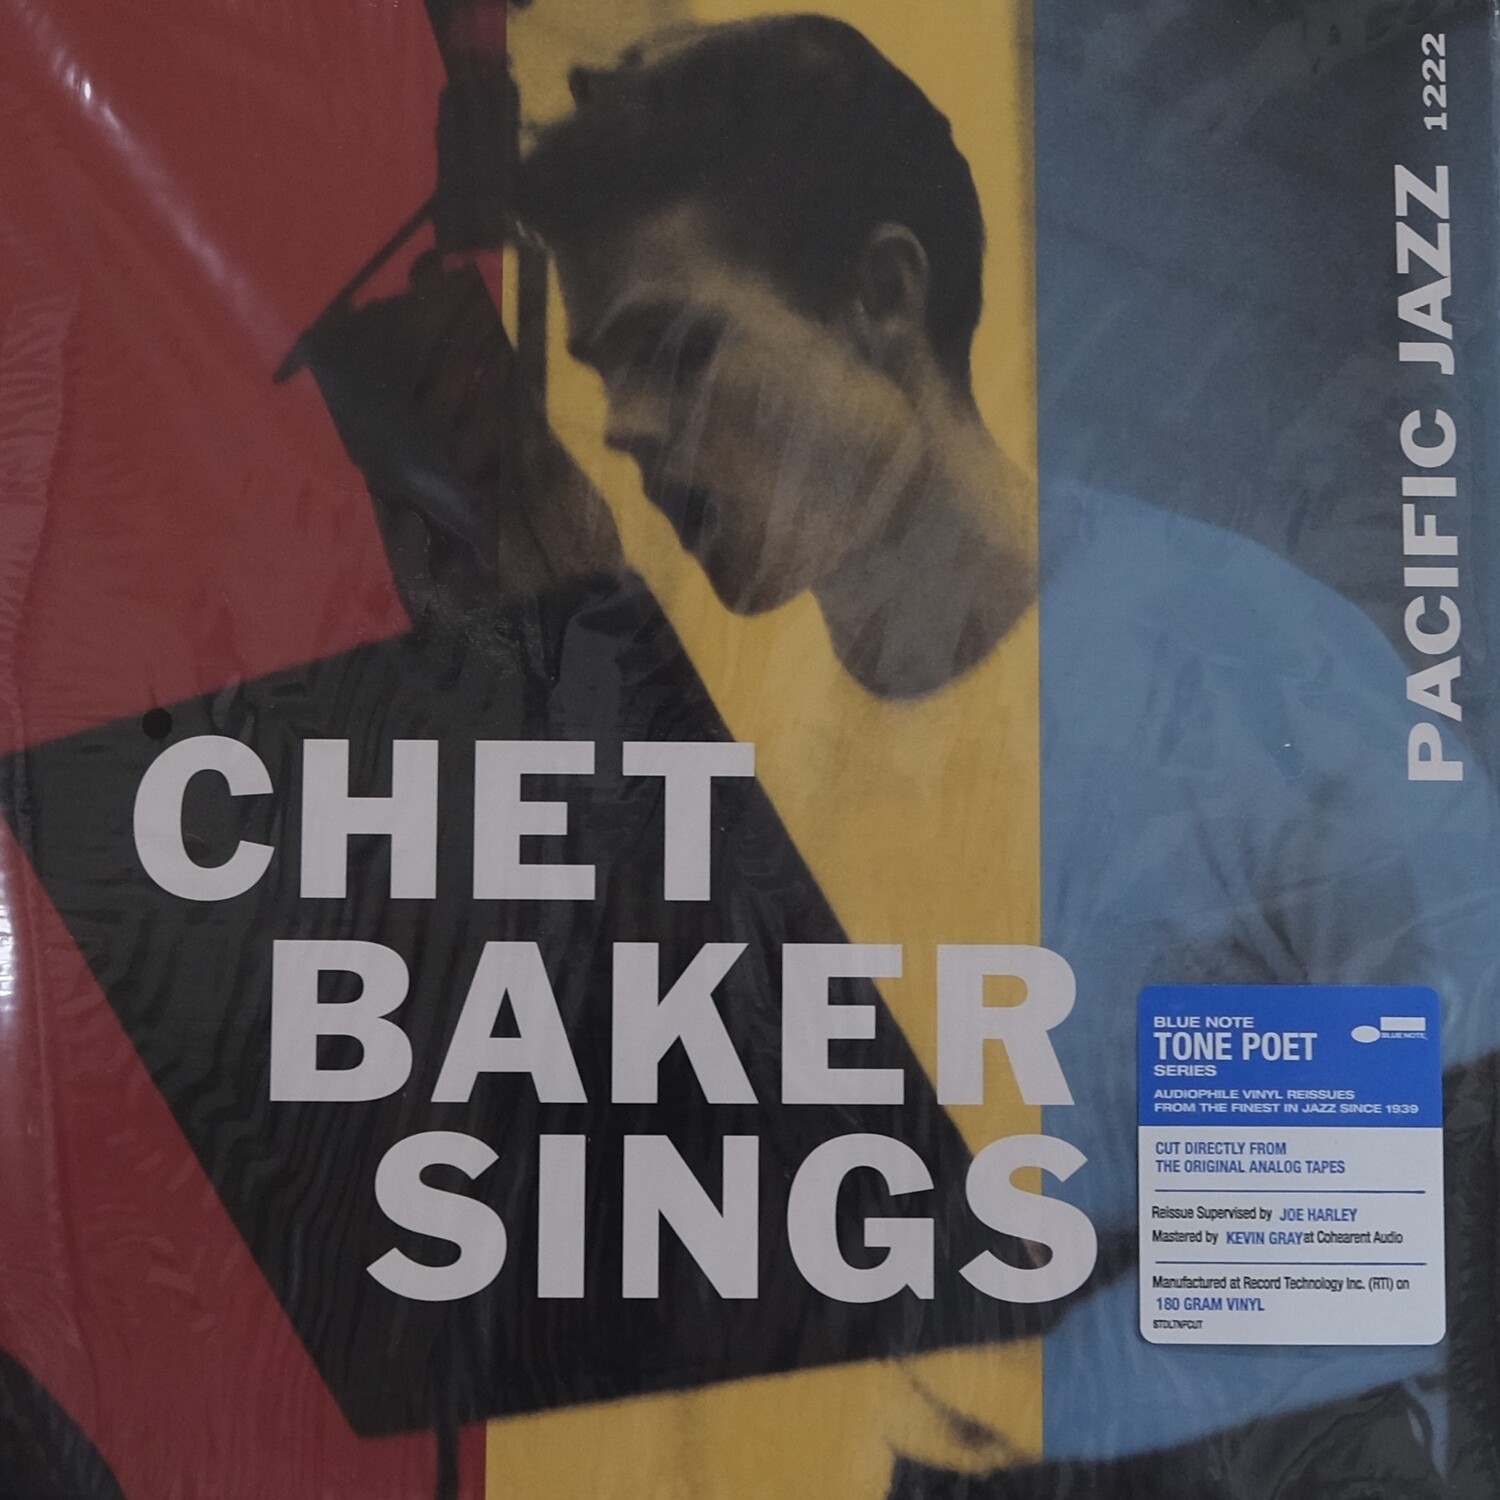 Chet Baker Sings - Blue Note